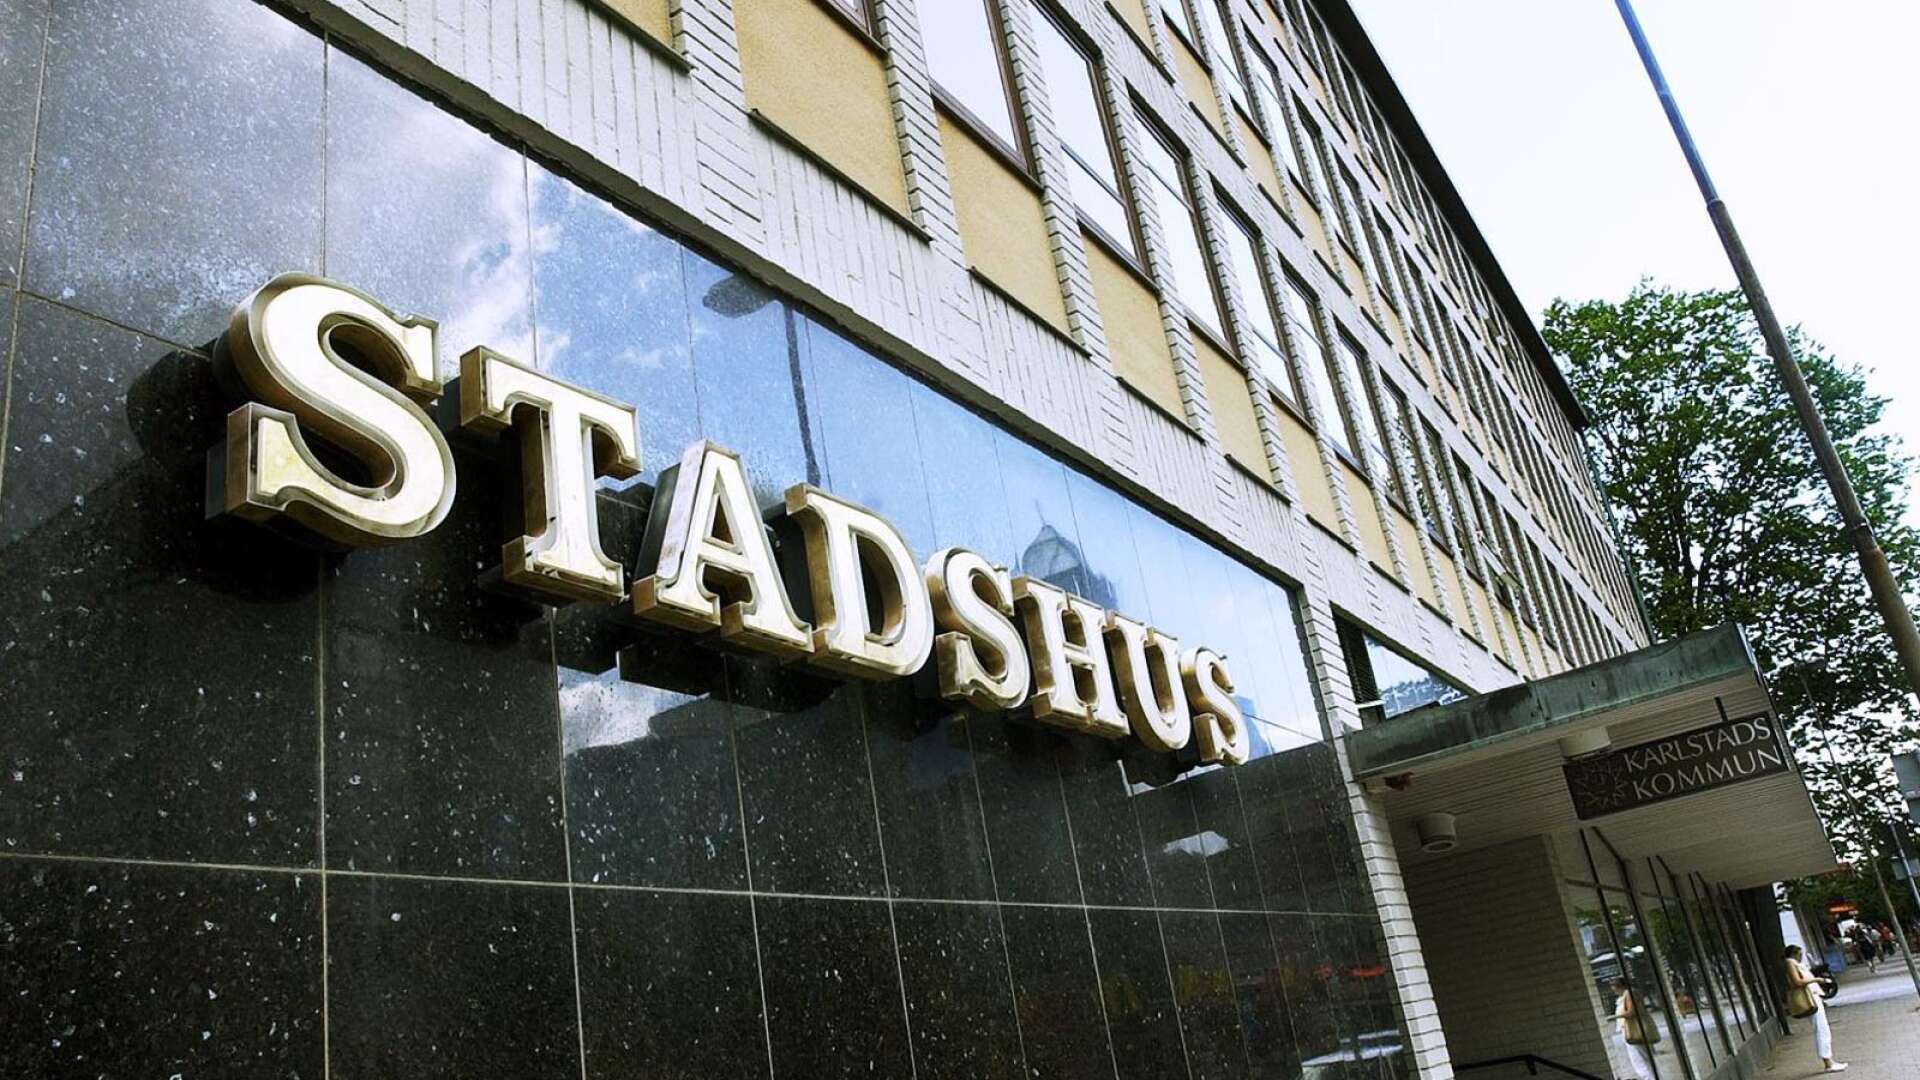 Stadshusförsäljningen i Karlstad har blivit polisanmäld